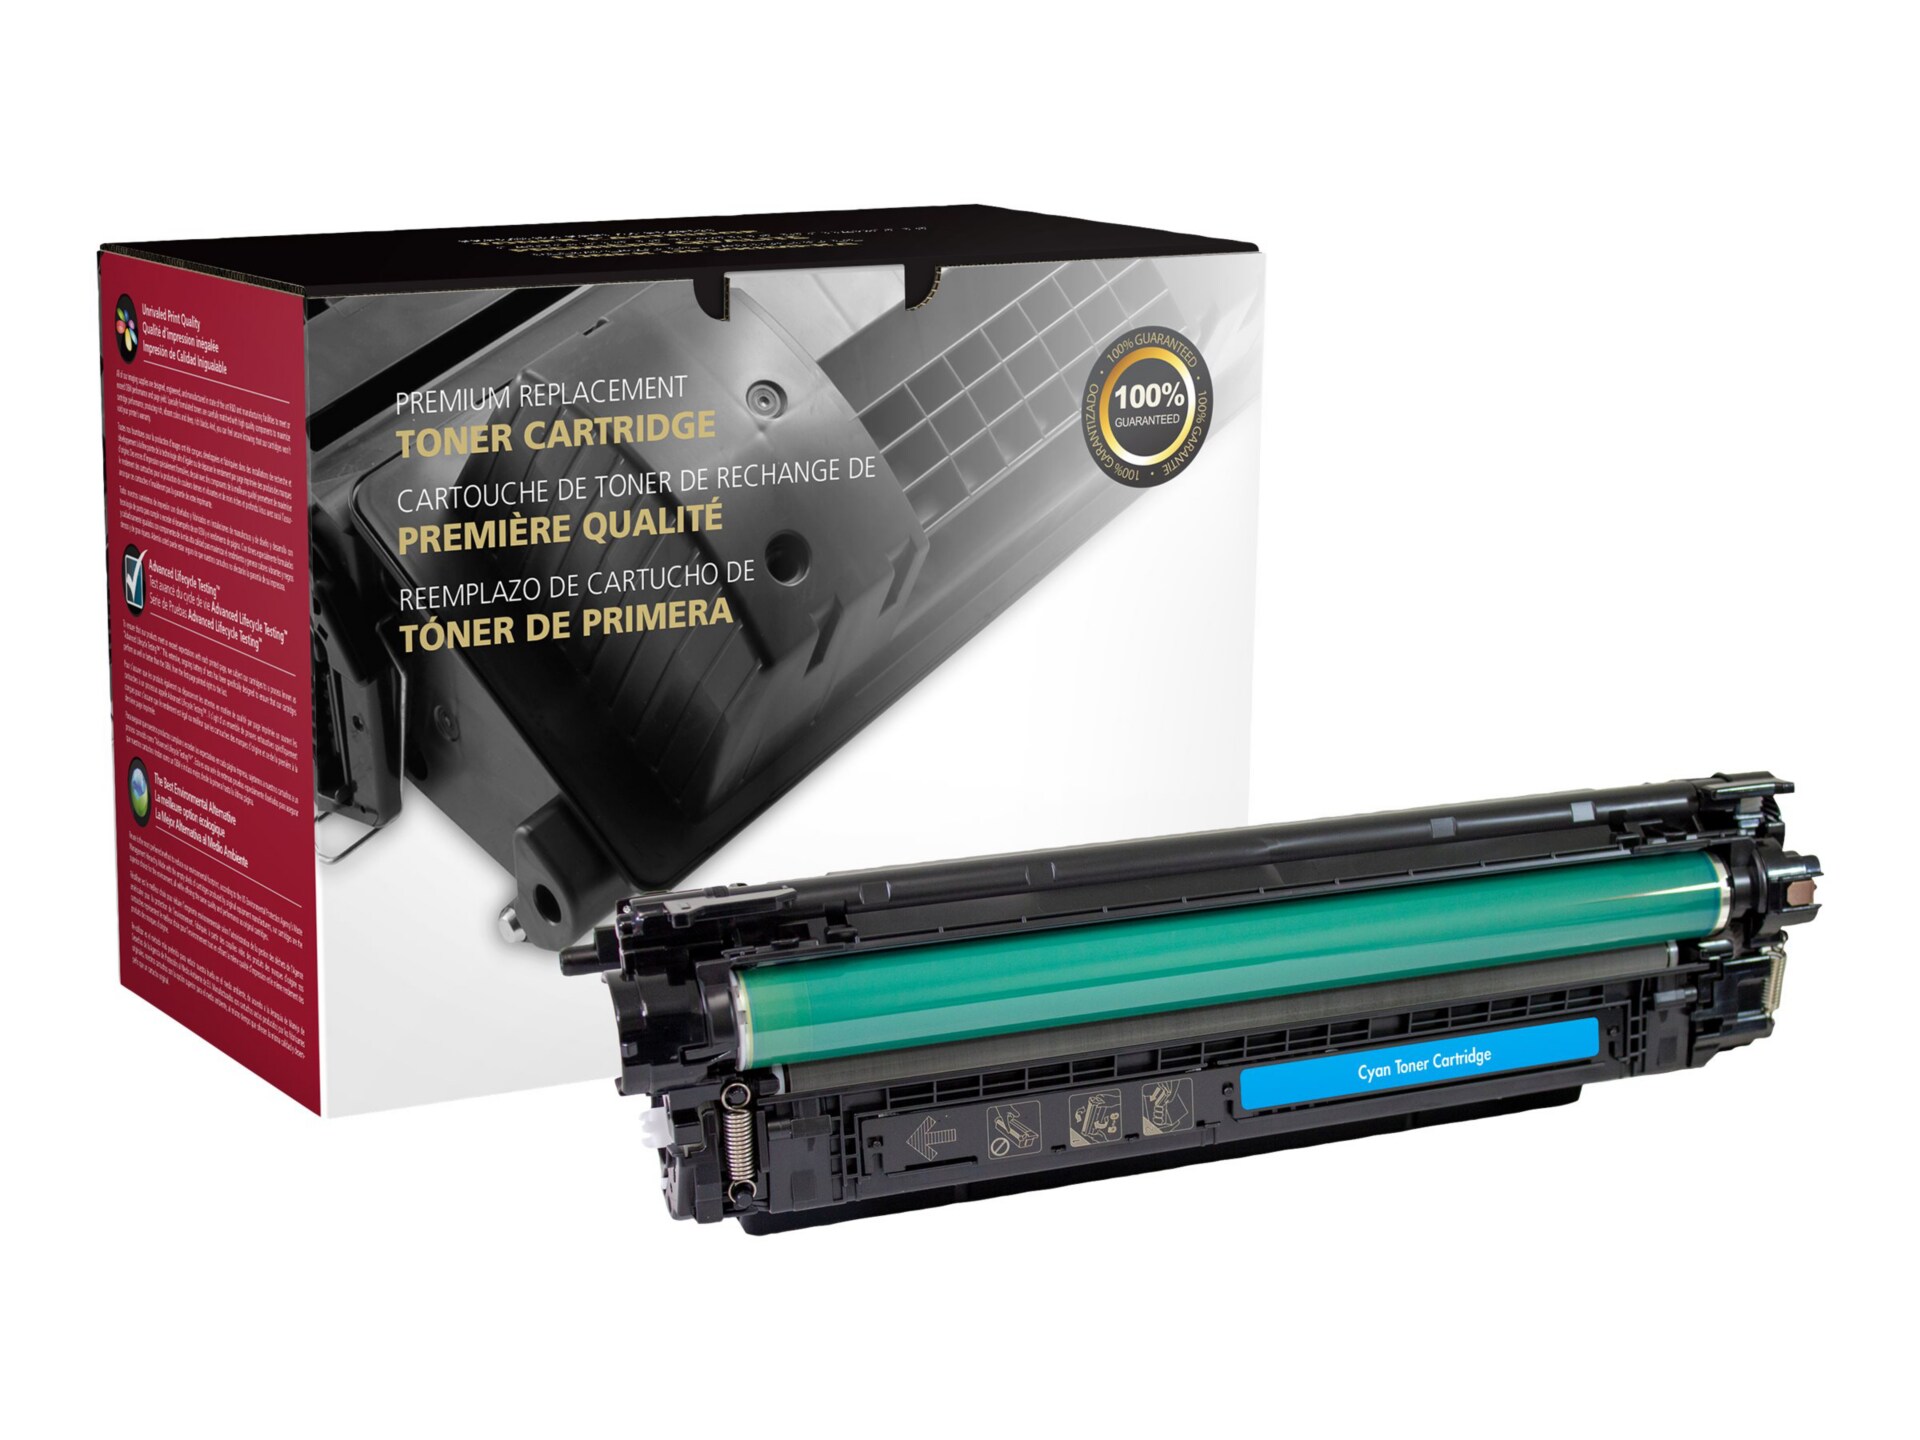 Toner HP 207A (W2210A) noir de 1350 pages - cartouche laser de